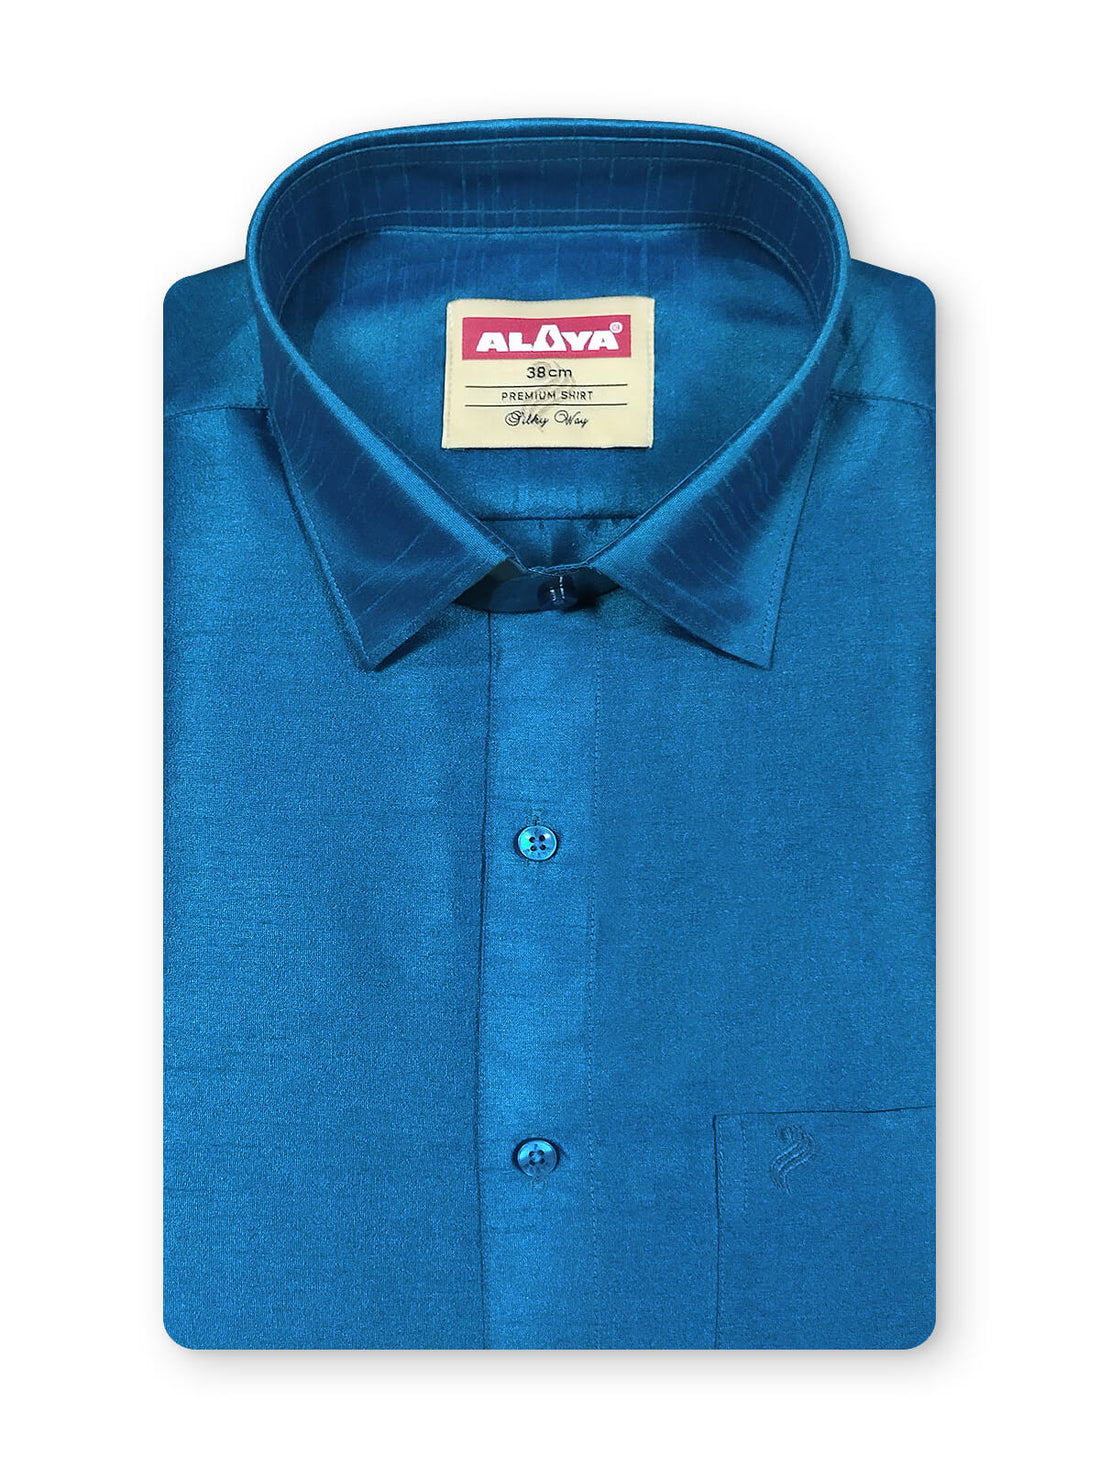 Silky Way Shirt for Men - Regular Fit - Blue